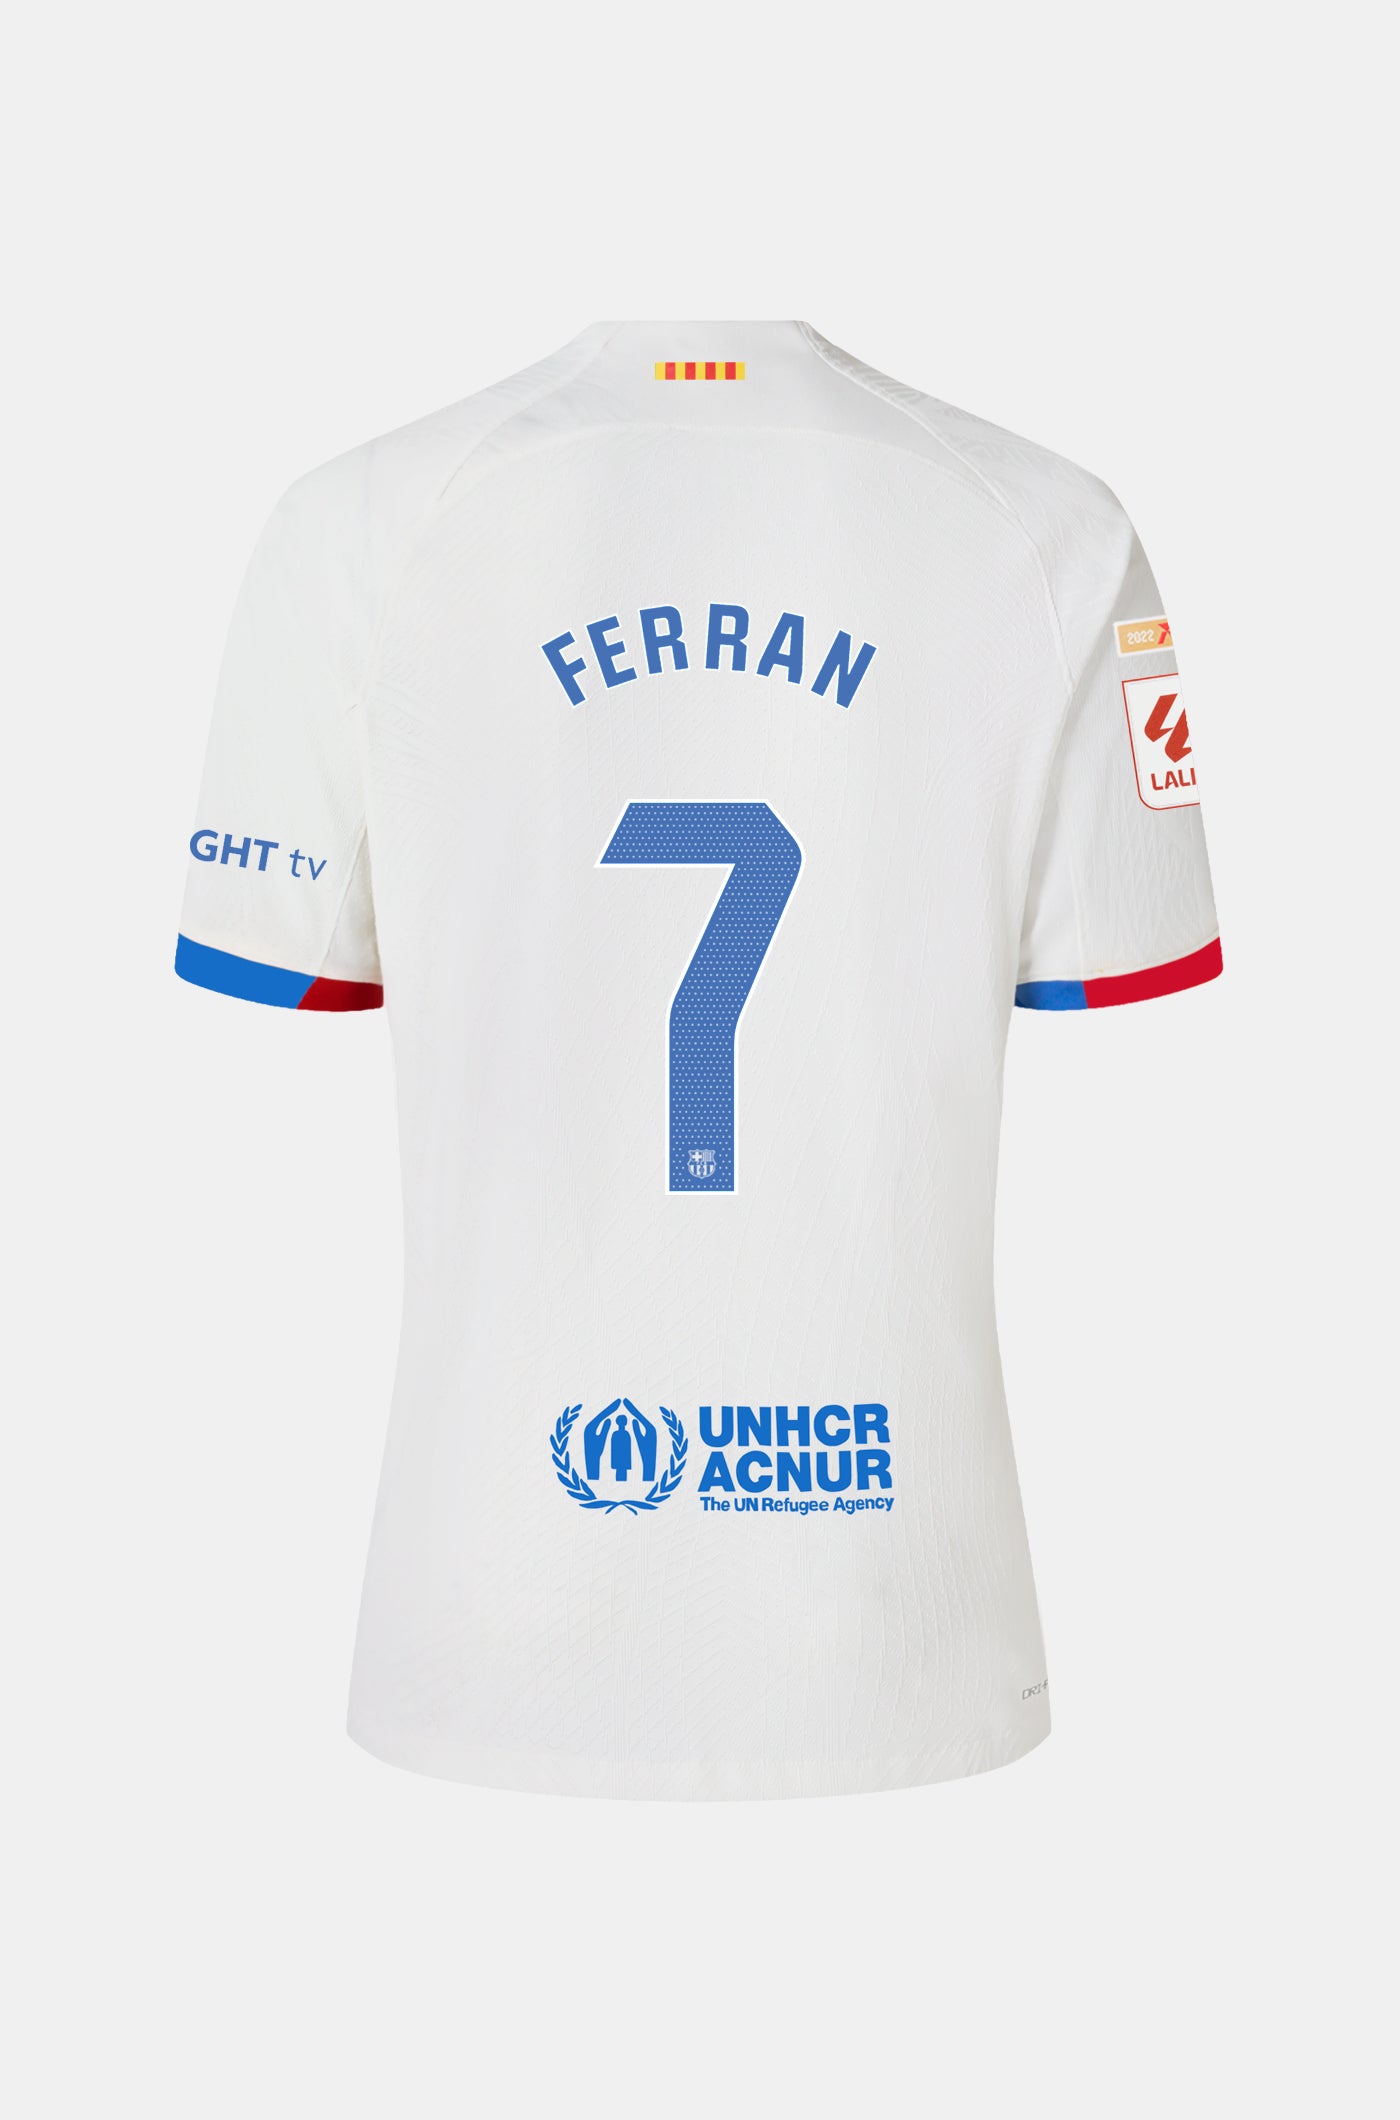 LFP FC Barcelona Away Shirt 23/24 Player’s Edition - Women - FERRAN